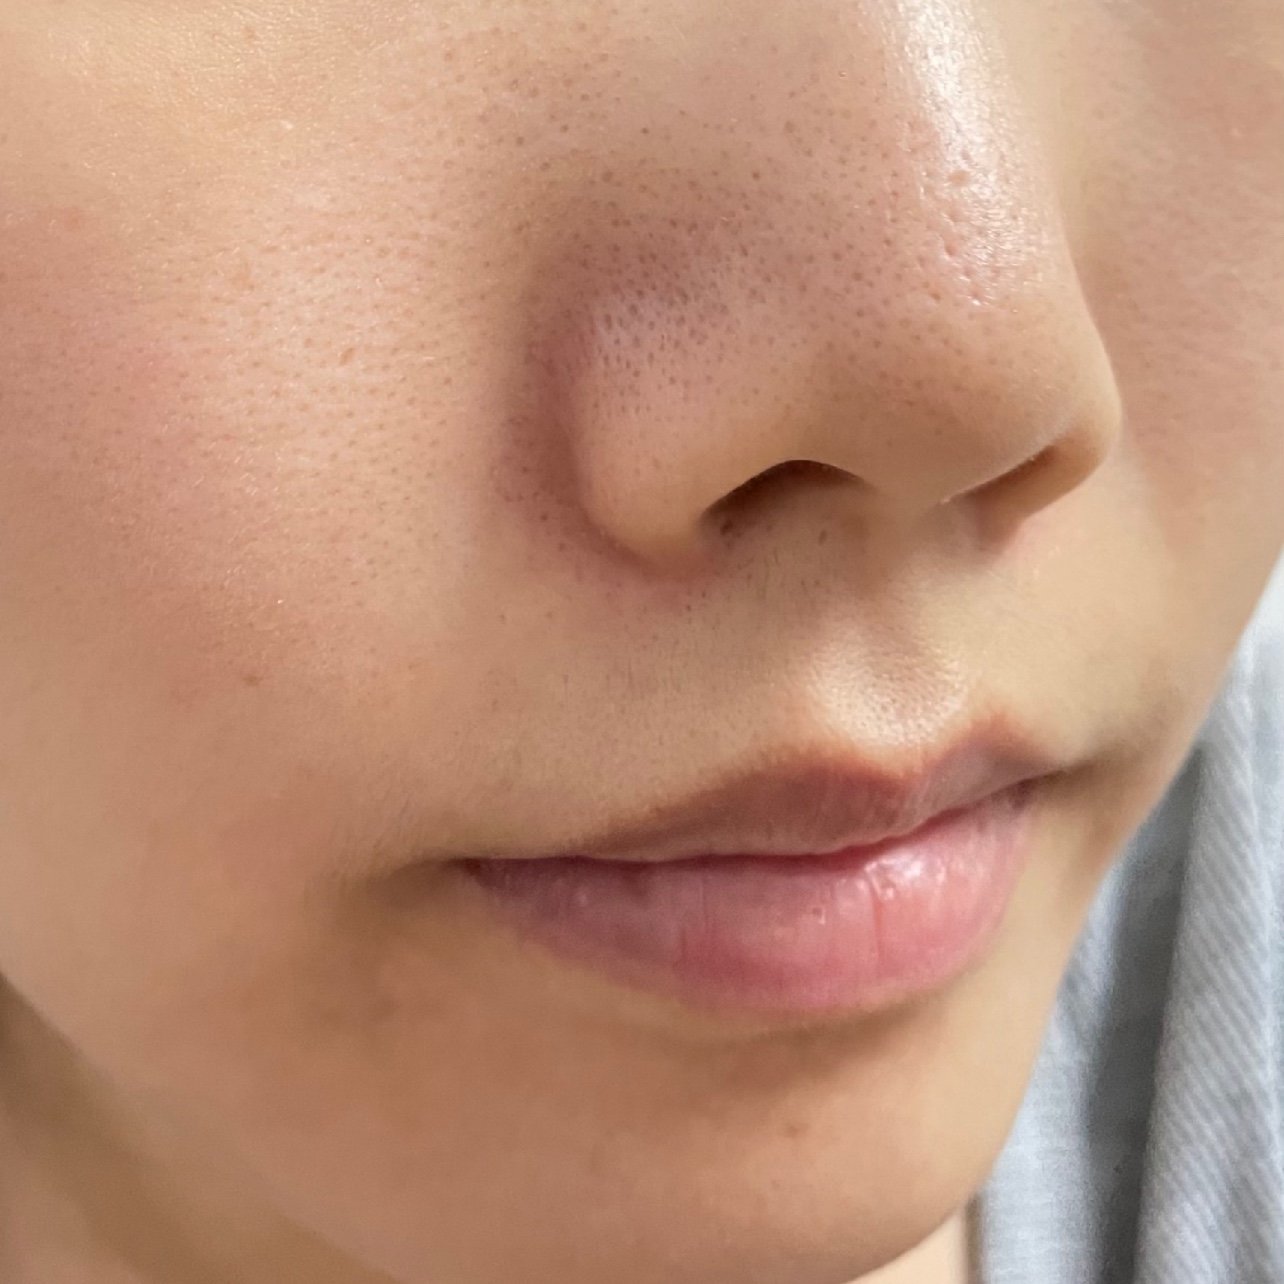 女人鼻孔长鼻毛的照片图片